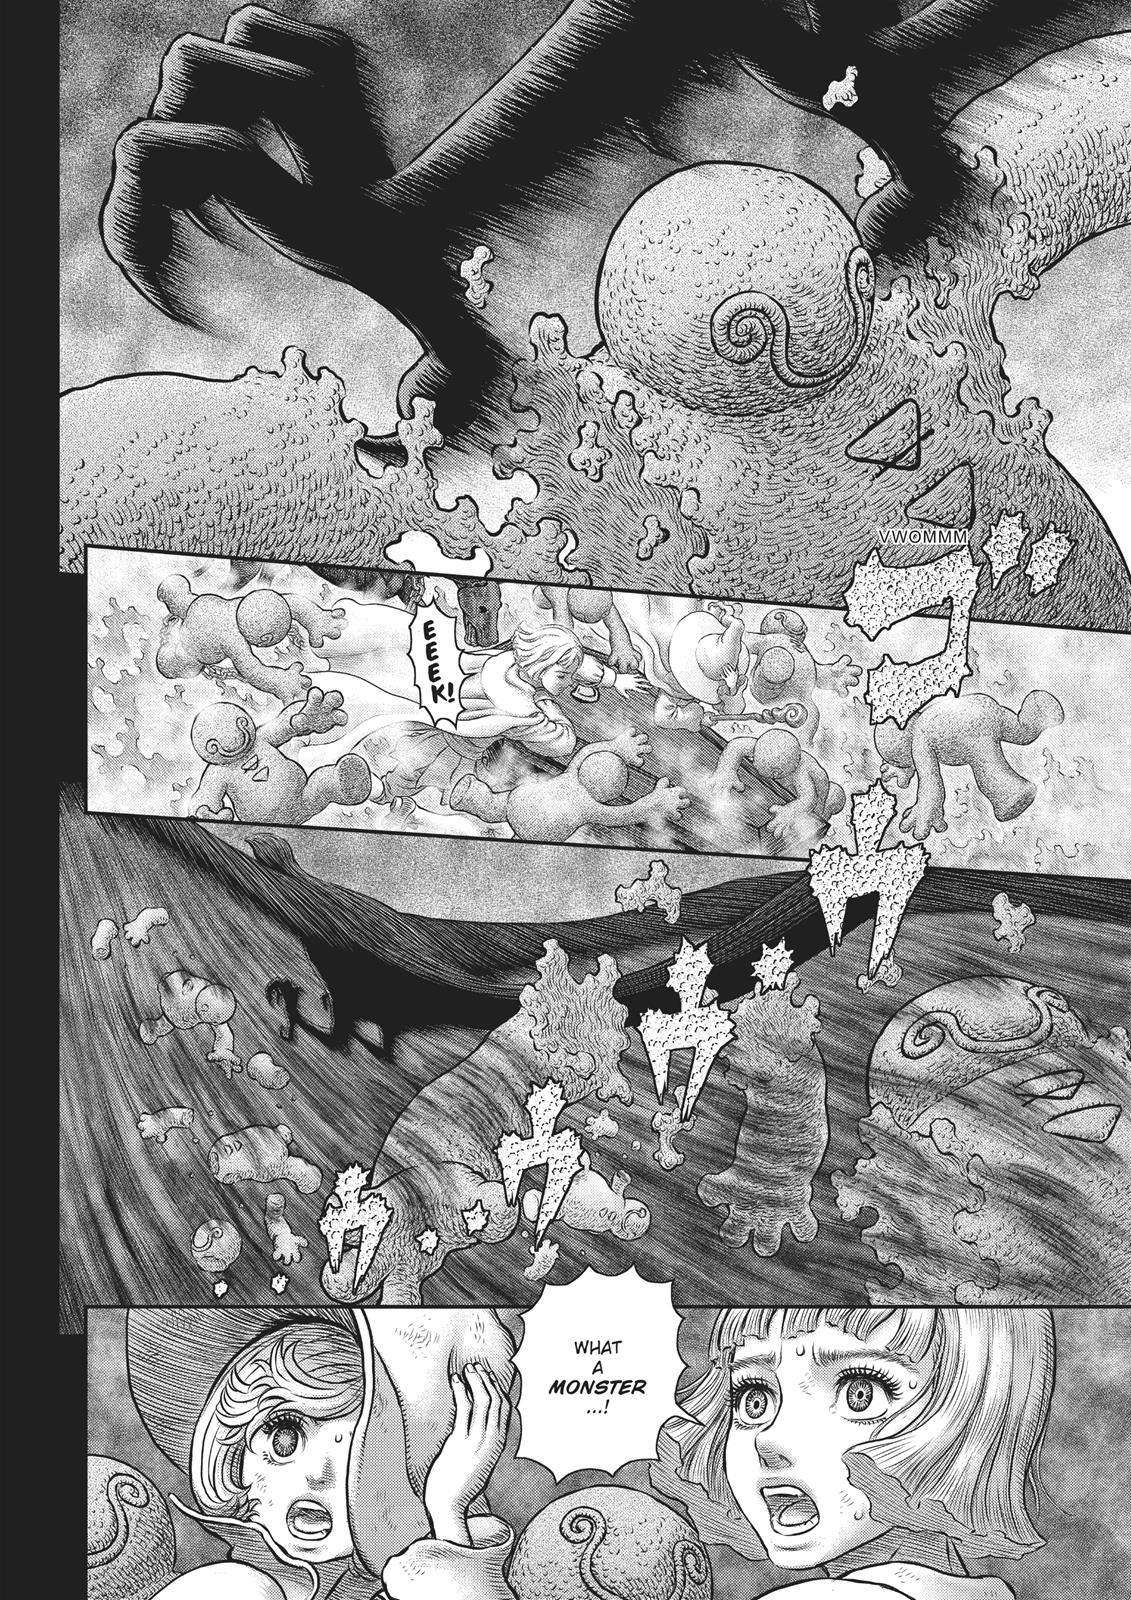 Berserk Manga Chapter 352 image 05